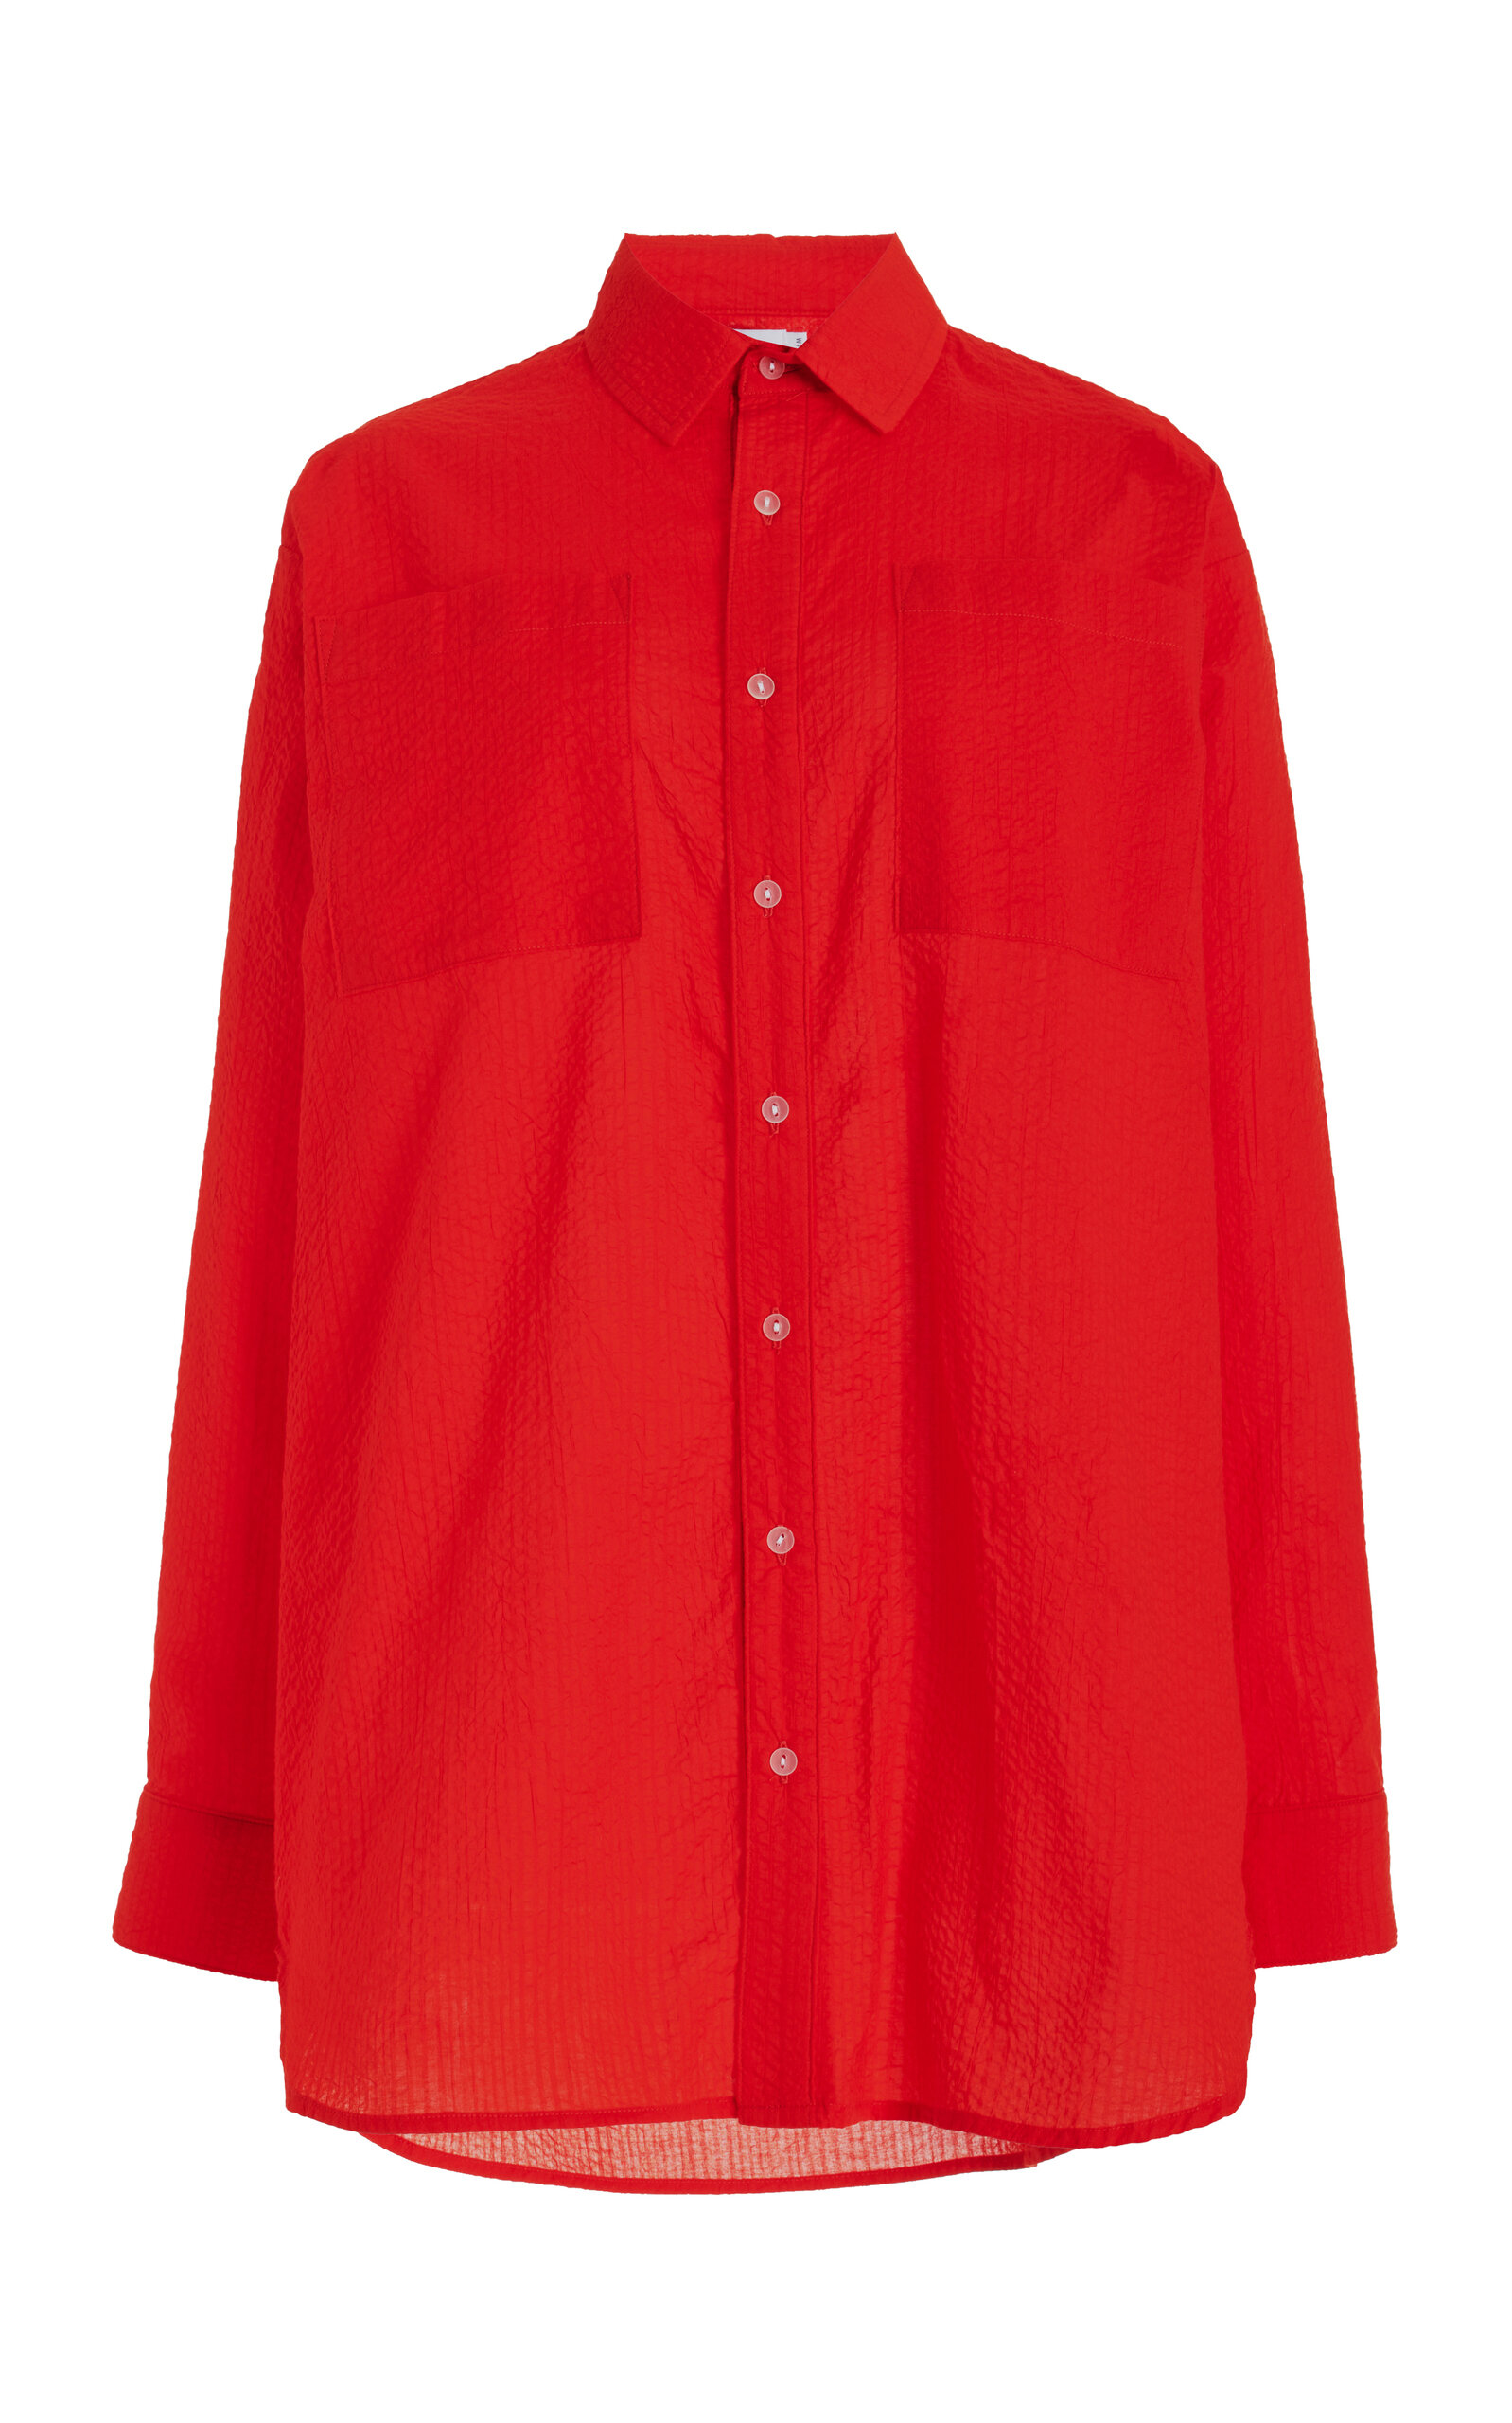 JADE SWIM - Mika Button-Down Shirt - Red - L/XL - Moda Operandi